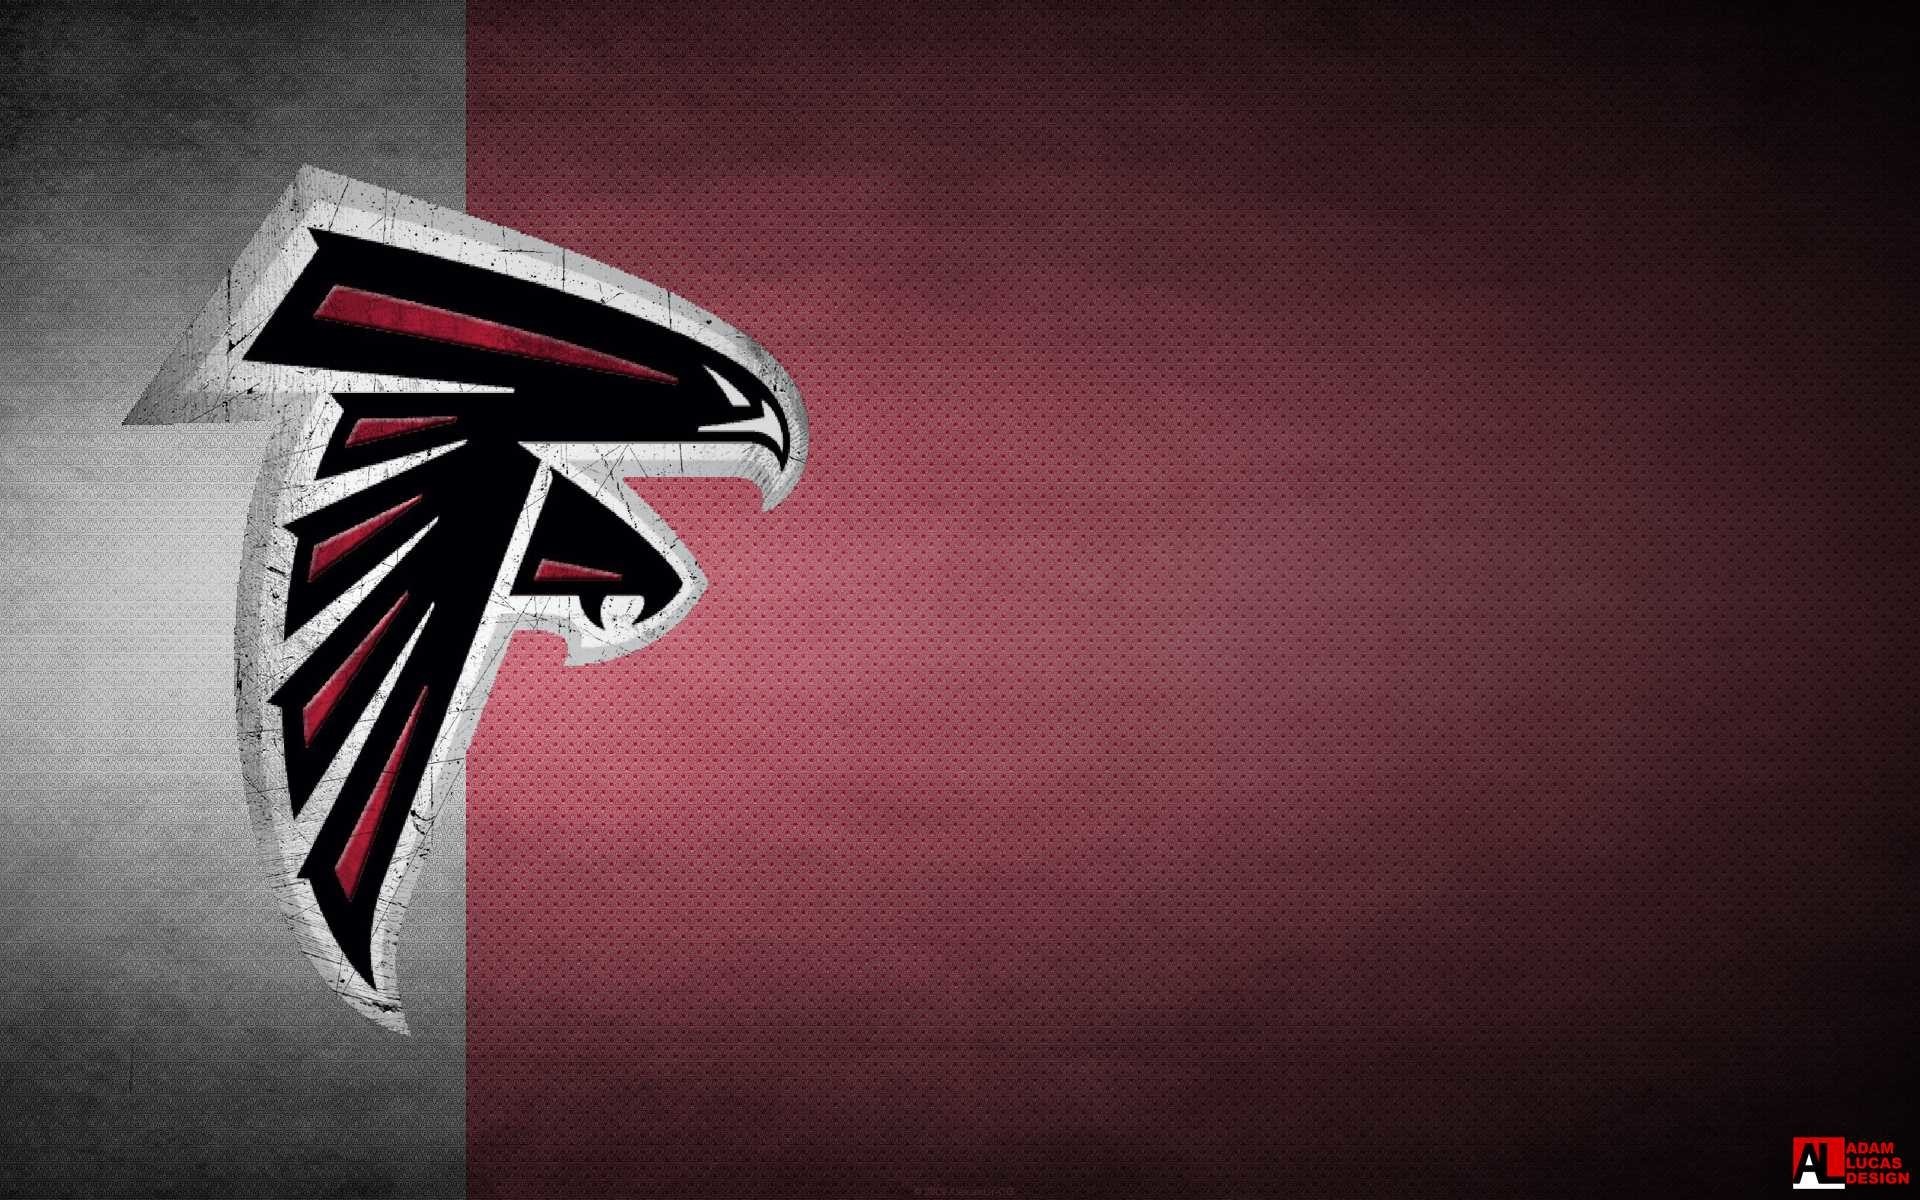 100 Atlanta Falcons Wallpapers  Wallpaperscom